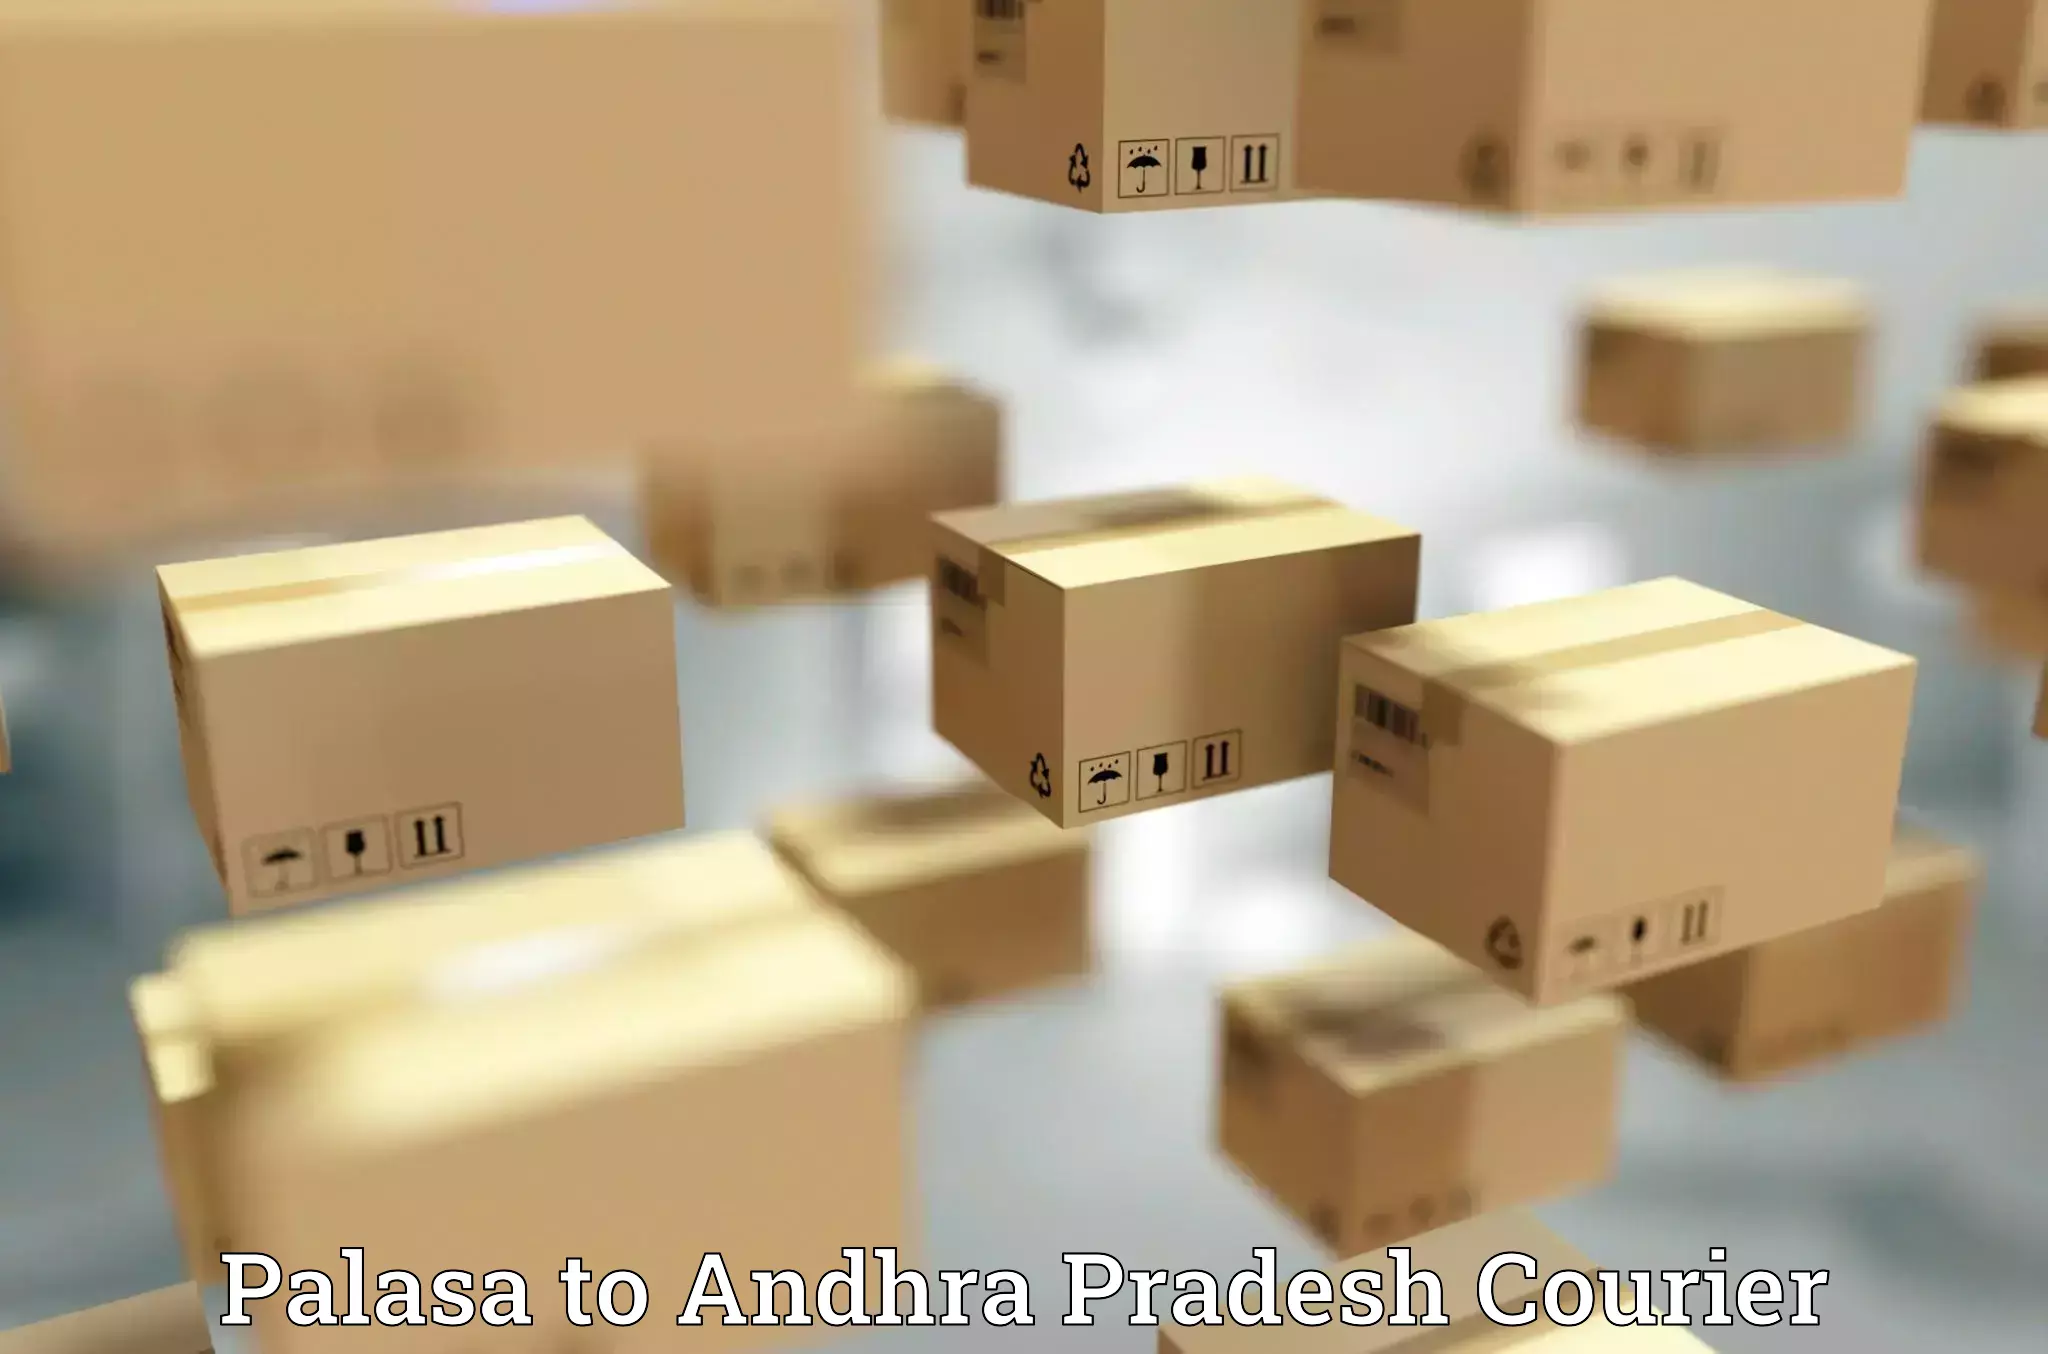 Flexible parcel services Palasa to Puttur Tirupati